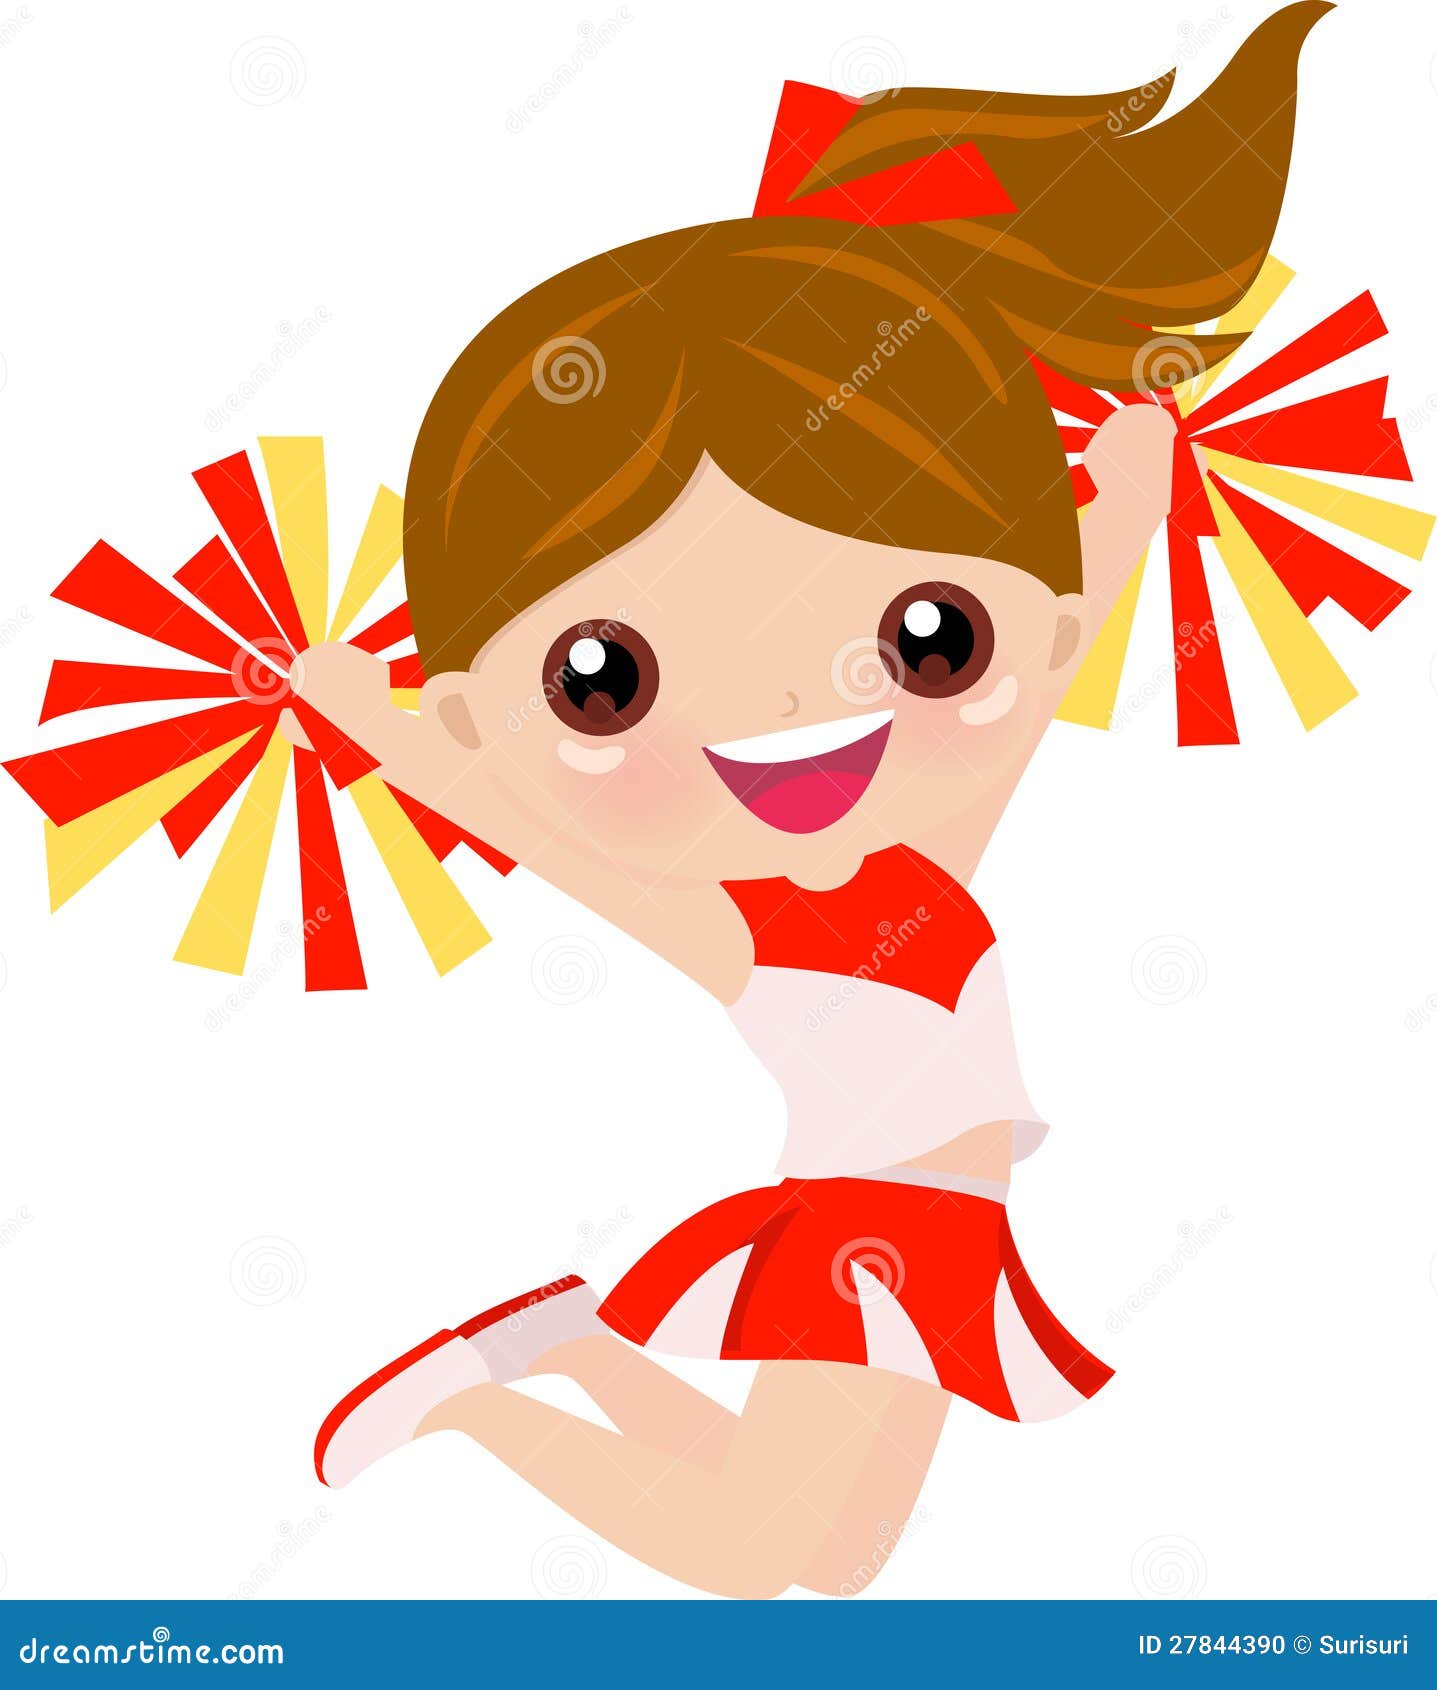 Cartoon girl cheerleader